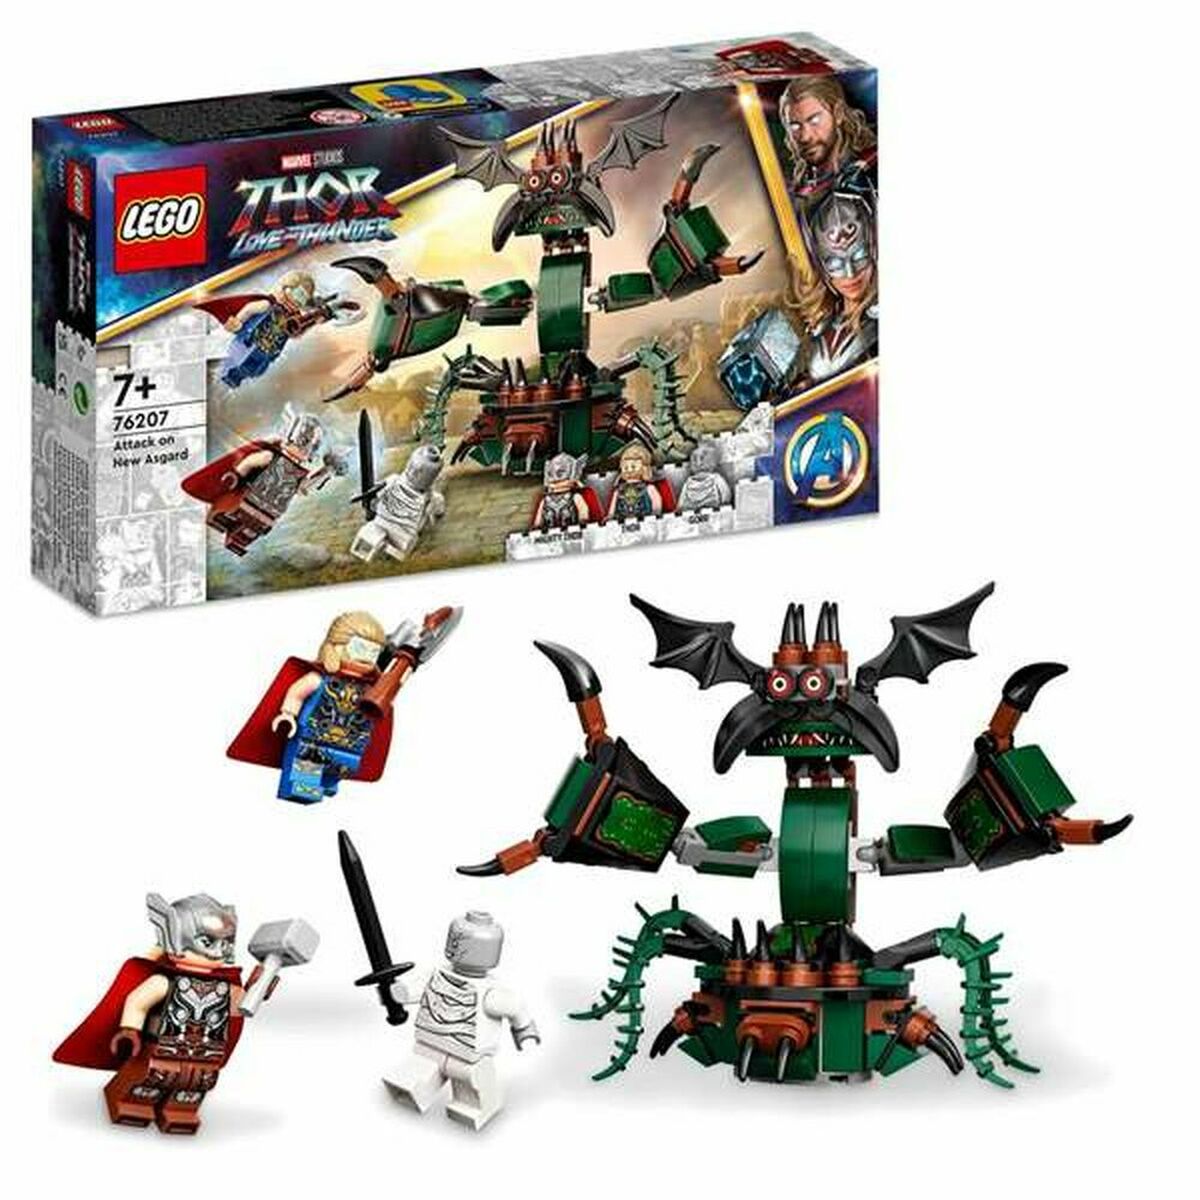 Konstruksjonssett Lego Thor Love and Thunder: Attack on New Asgard